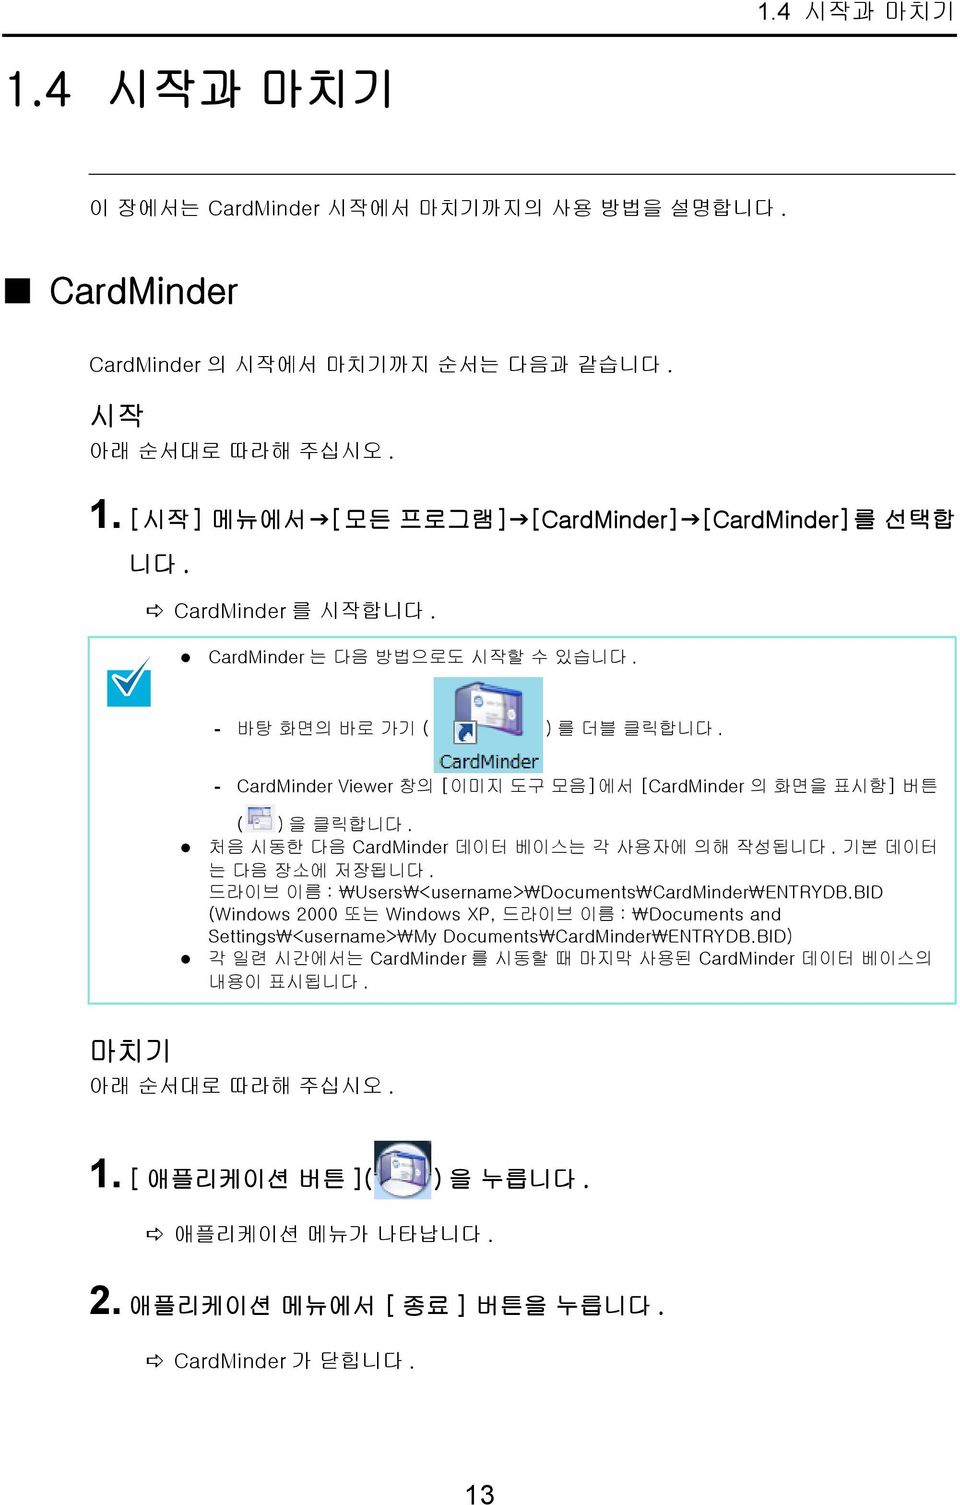 처음 시동한 다음 CardMinder 데이터 베이스는 각 사용자에 의해 작성됩니다. 기본 데이터 는 다음 장소에 저장됩니다. 드라이브 이름 : \Users\<username>\Documents\CardMinder\ENTRYDB.